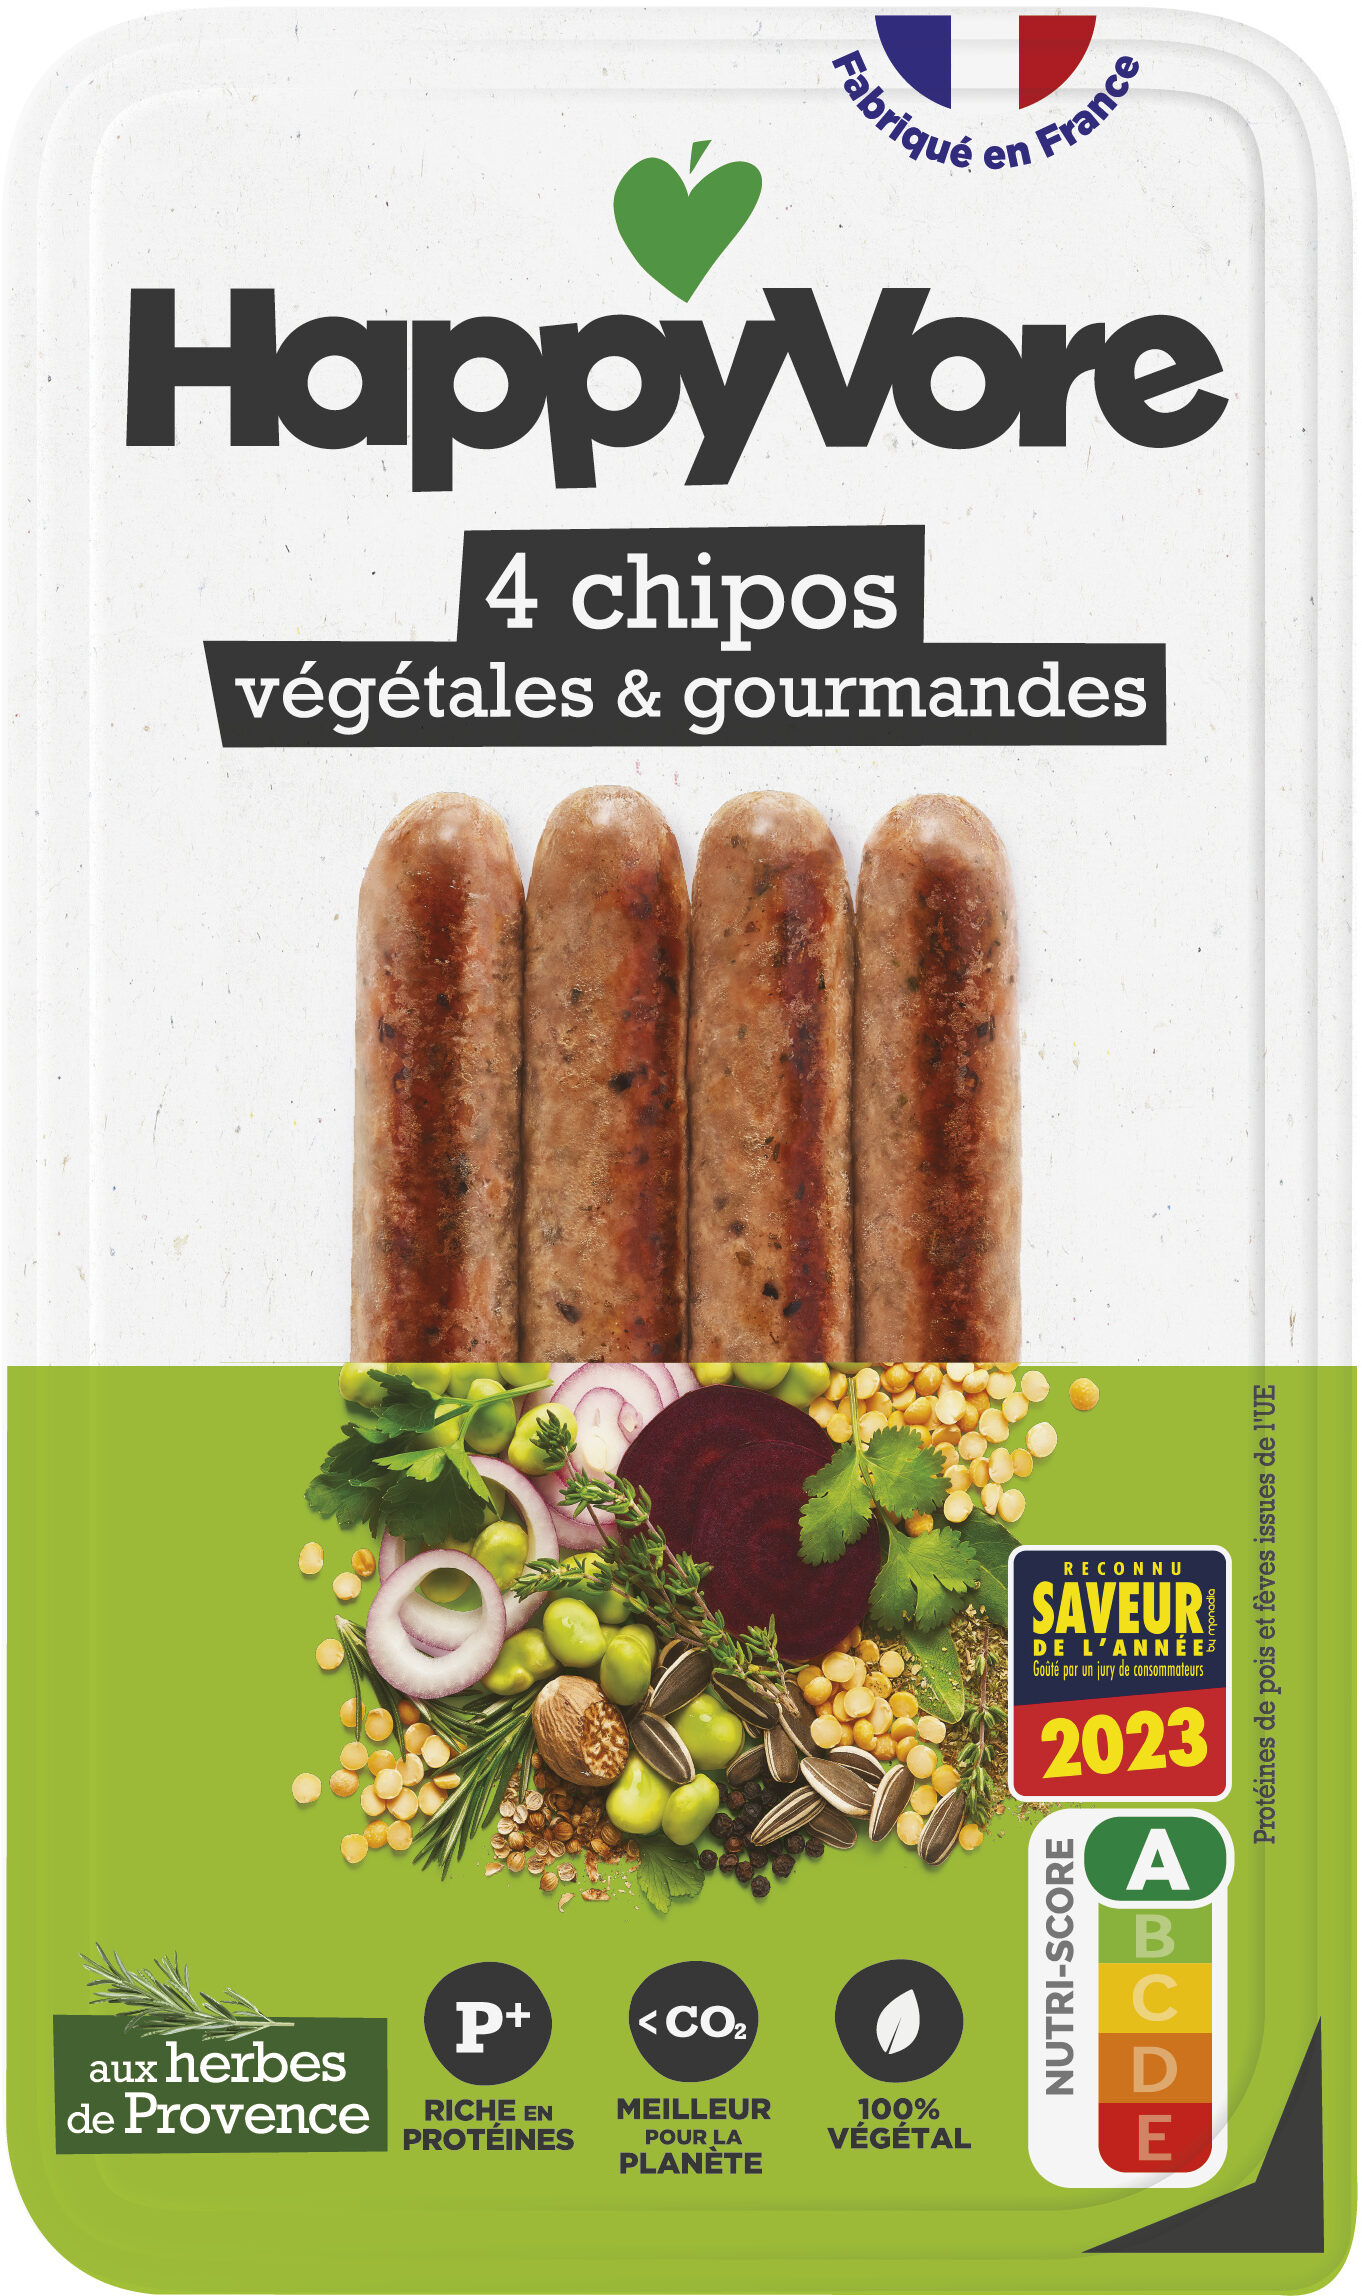 Chipos végétales aux herbes de Provence - Product - fr